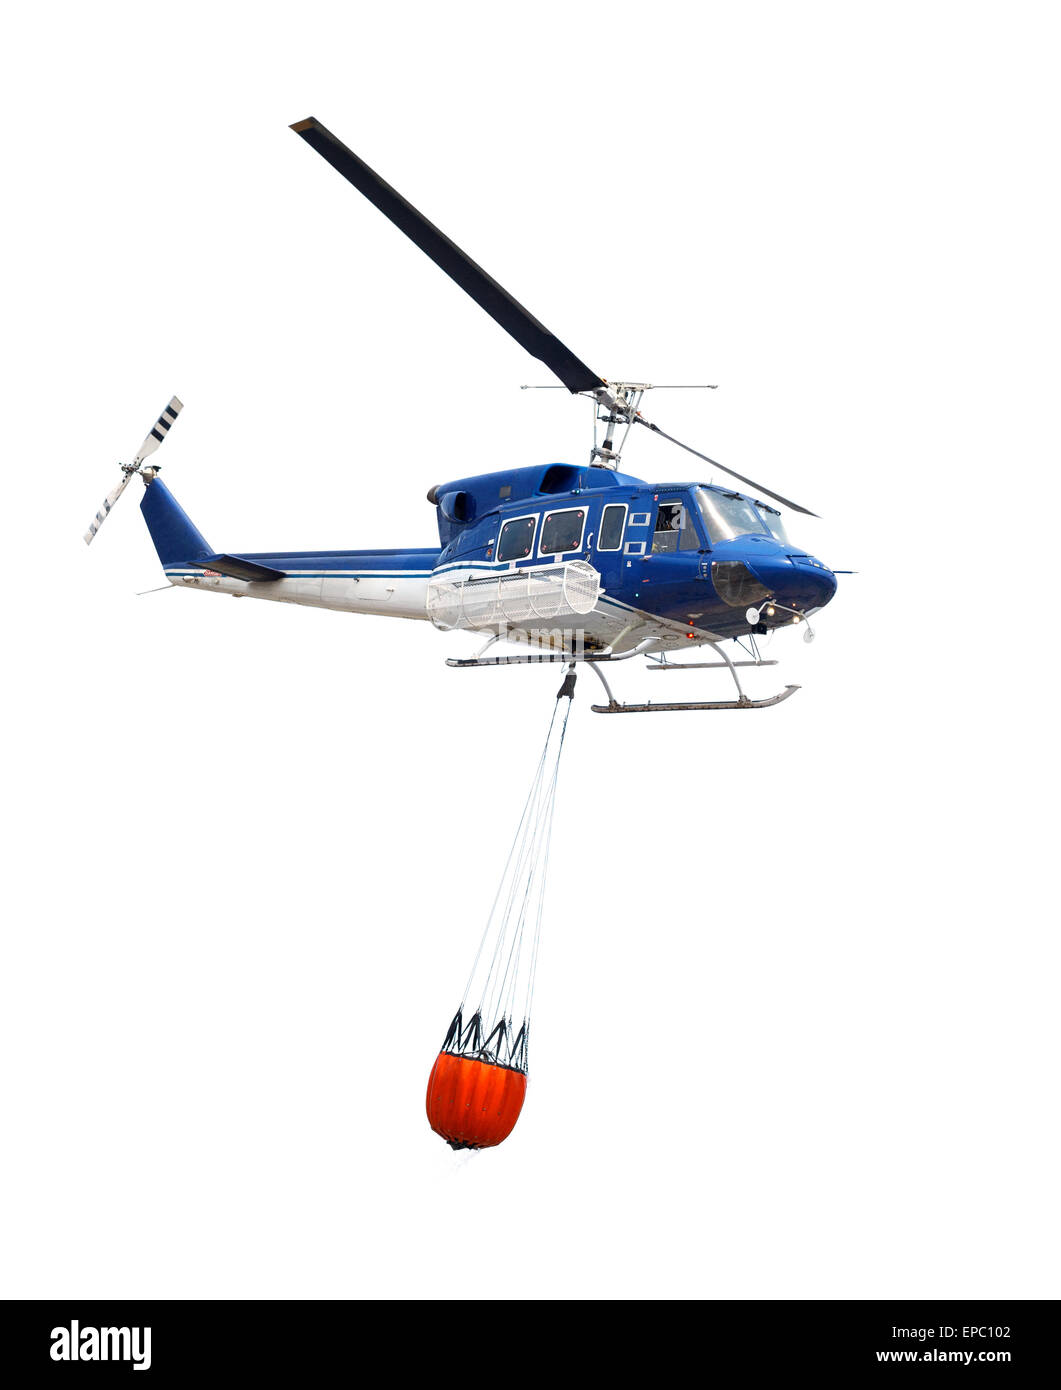 La lutte contre les incendies d'aéronefs aérienne hélicoptère avec de l'eau Banque D'Images